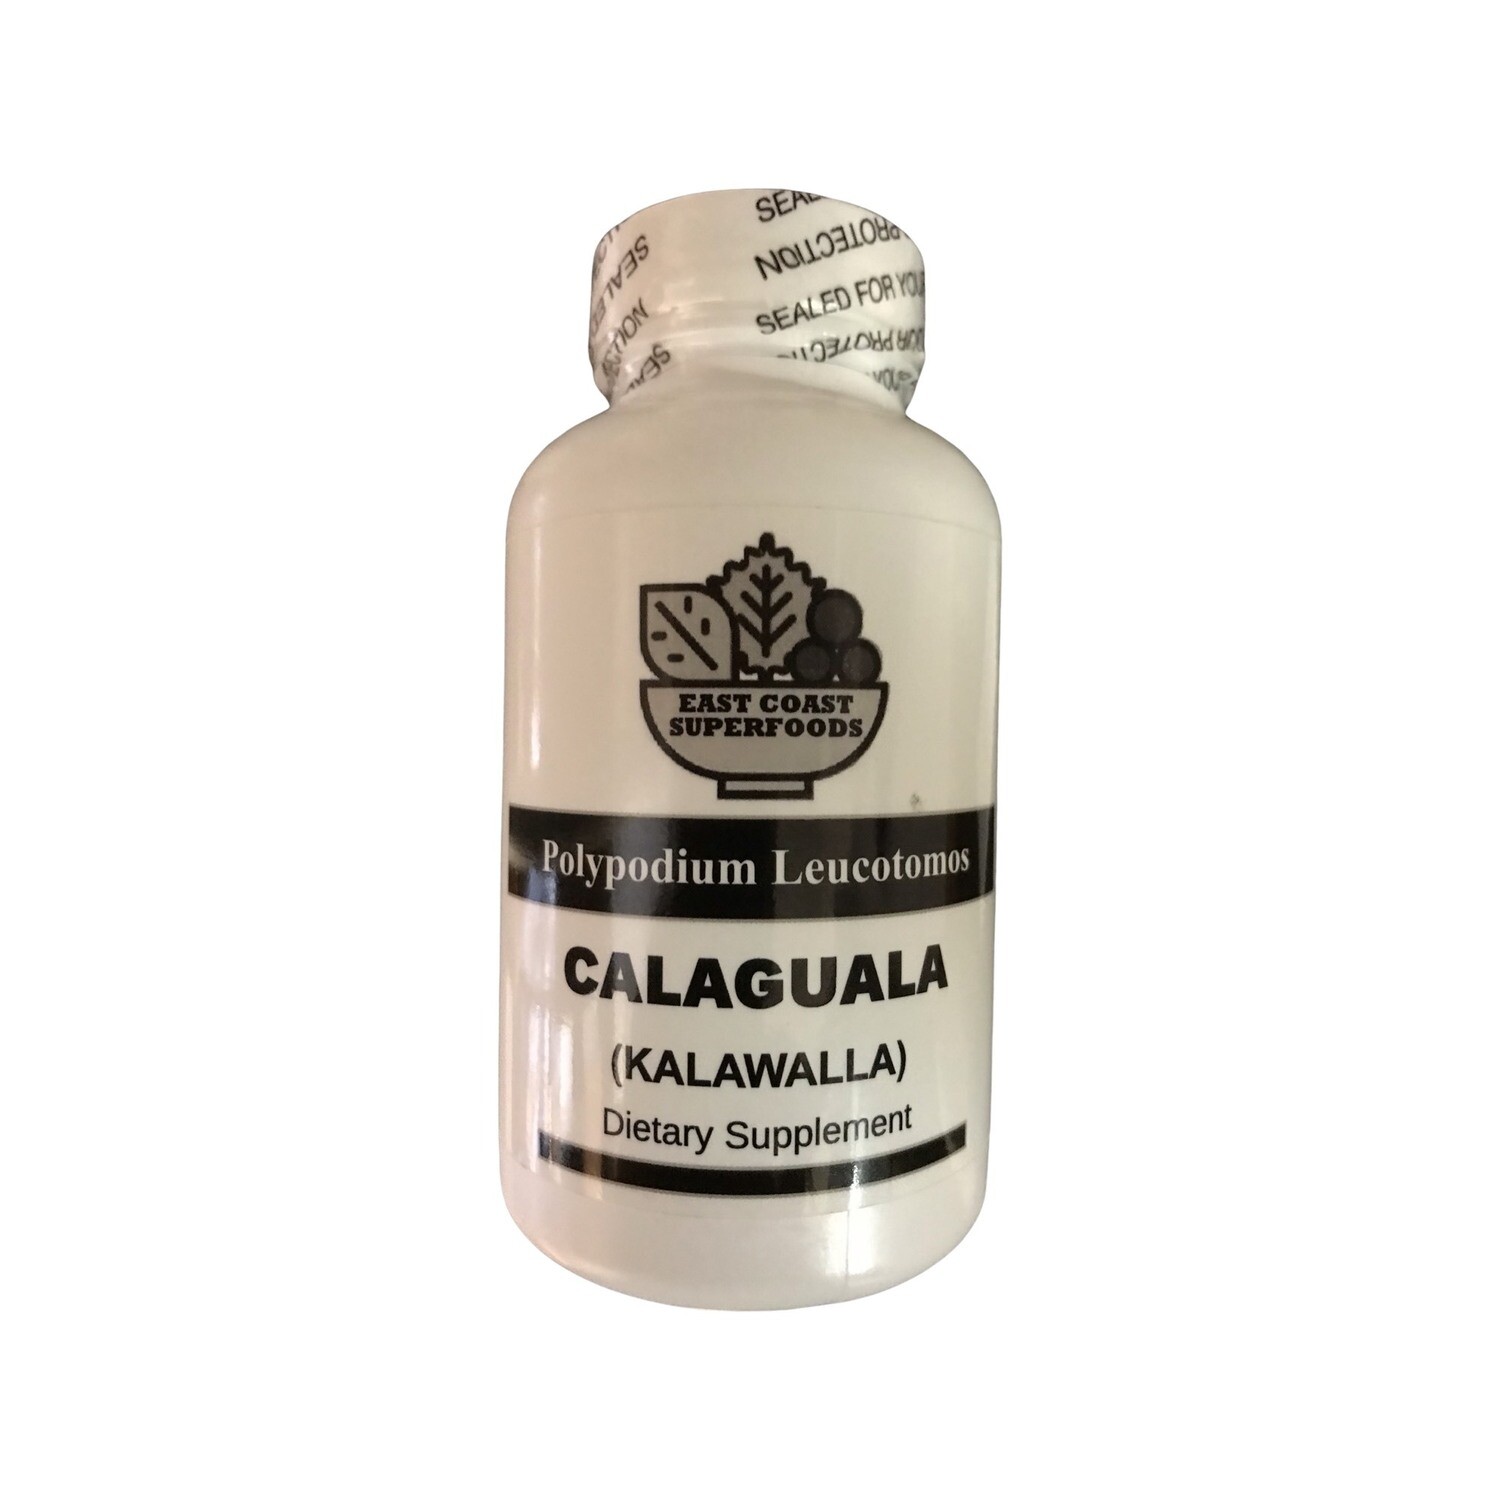 Calaguala 500 mg 100 Capsules (Kalawalla) Polypodium Leucotomos from East Coast Superfoods